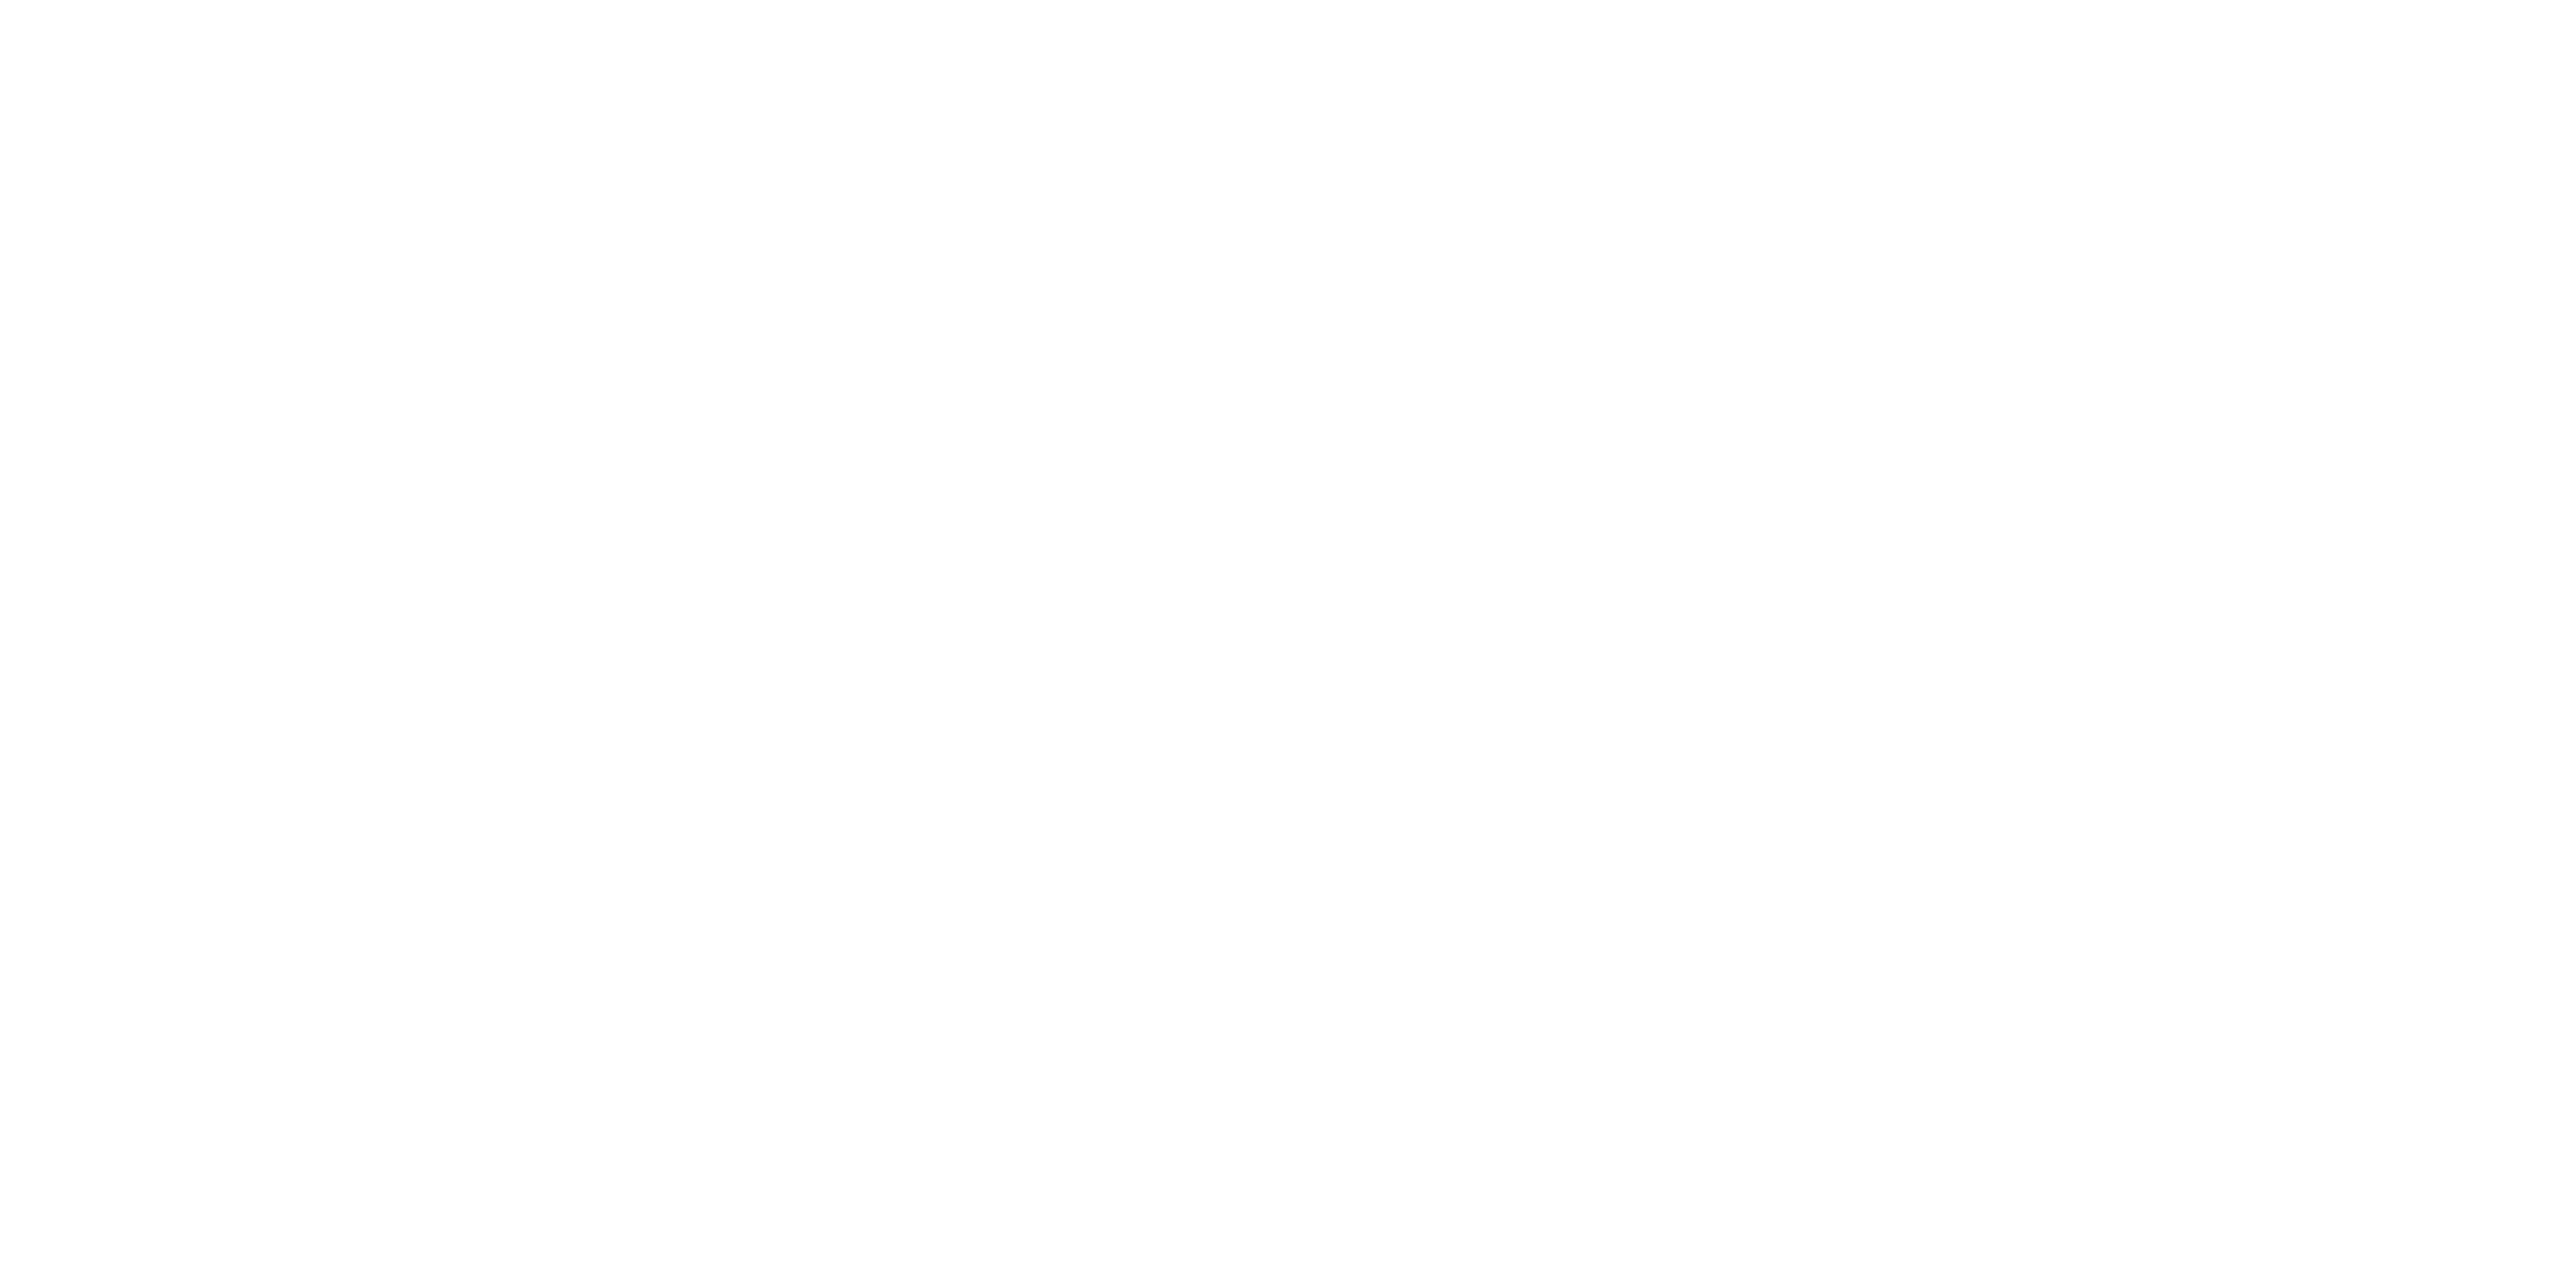 new logo Artisan Remodeling & Design in white